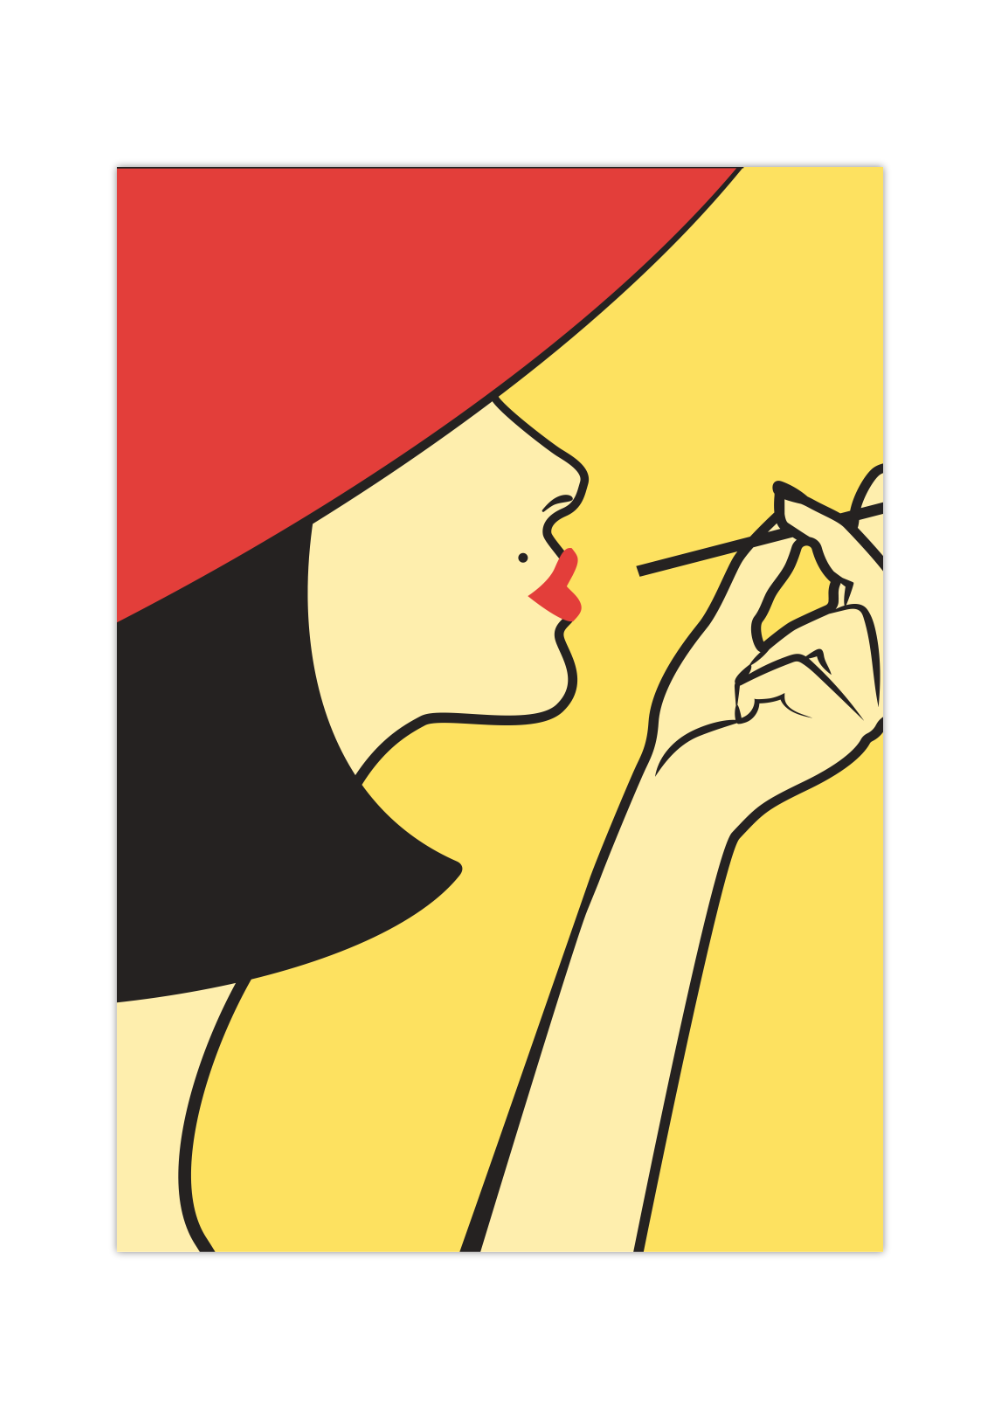 Das Poster zeigt eine elegante Frau der 20 Jahre, die raucht. Das Bild ist in Gelb und Rot gehalten. Das feministische Poster ist perfekt für alle elegante Frauen und dekorativ in jedem Raum, ob Wohn- oder Schlafzimmer.